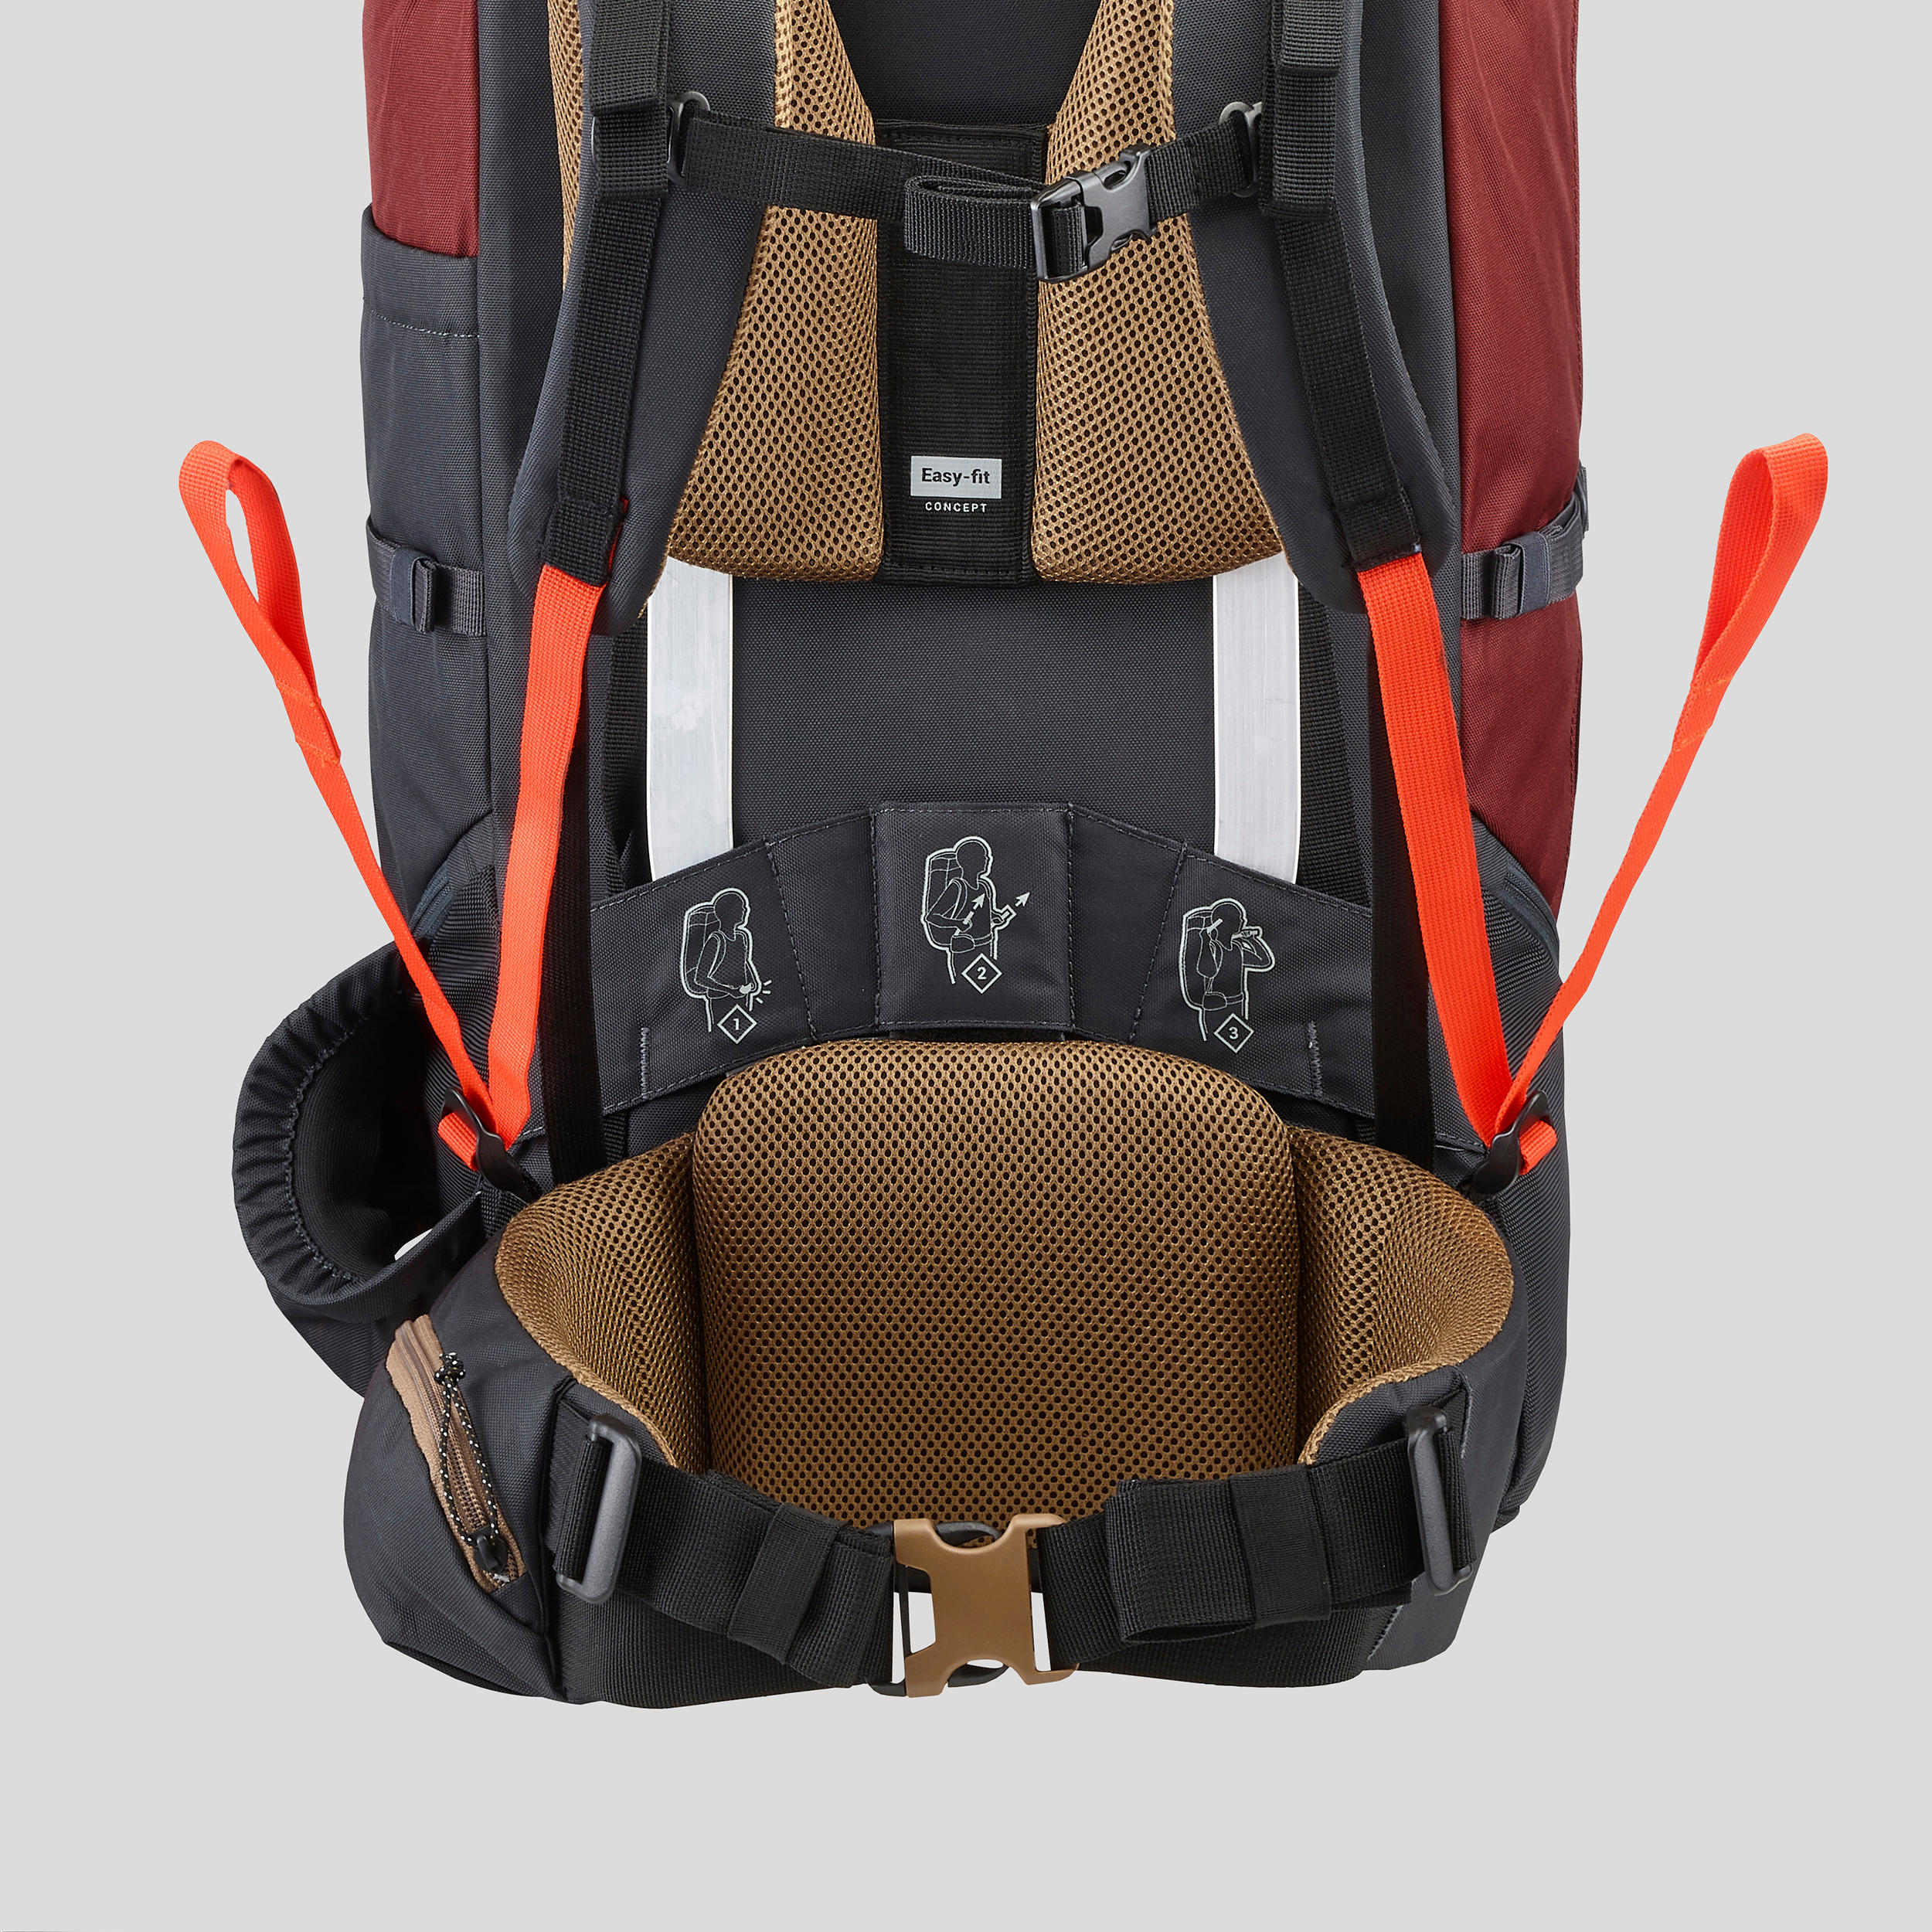 Men's 70 L Hiking Backpack - MT 100 Easyfit - FORCLAZ